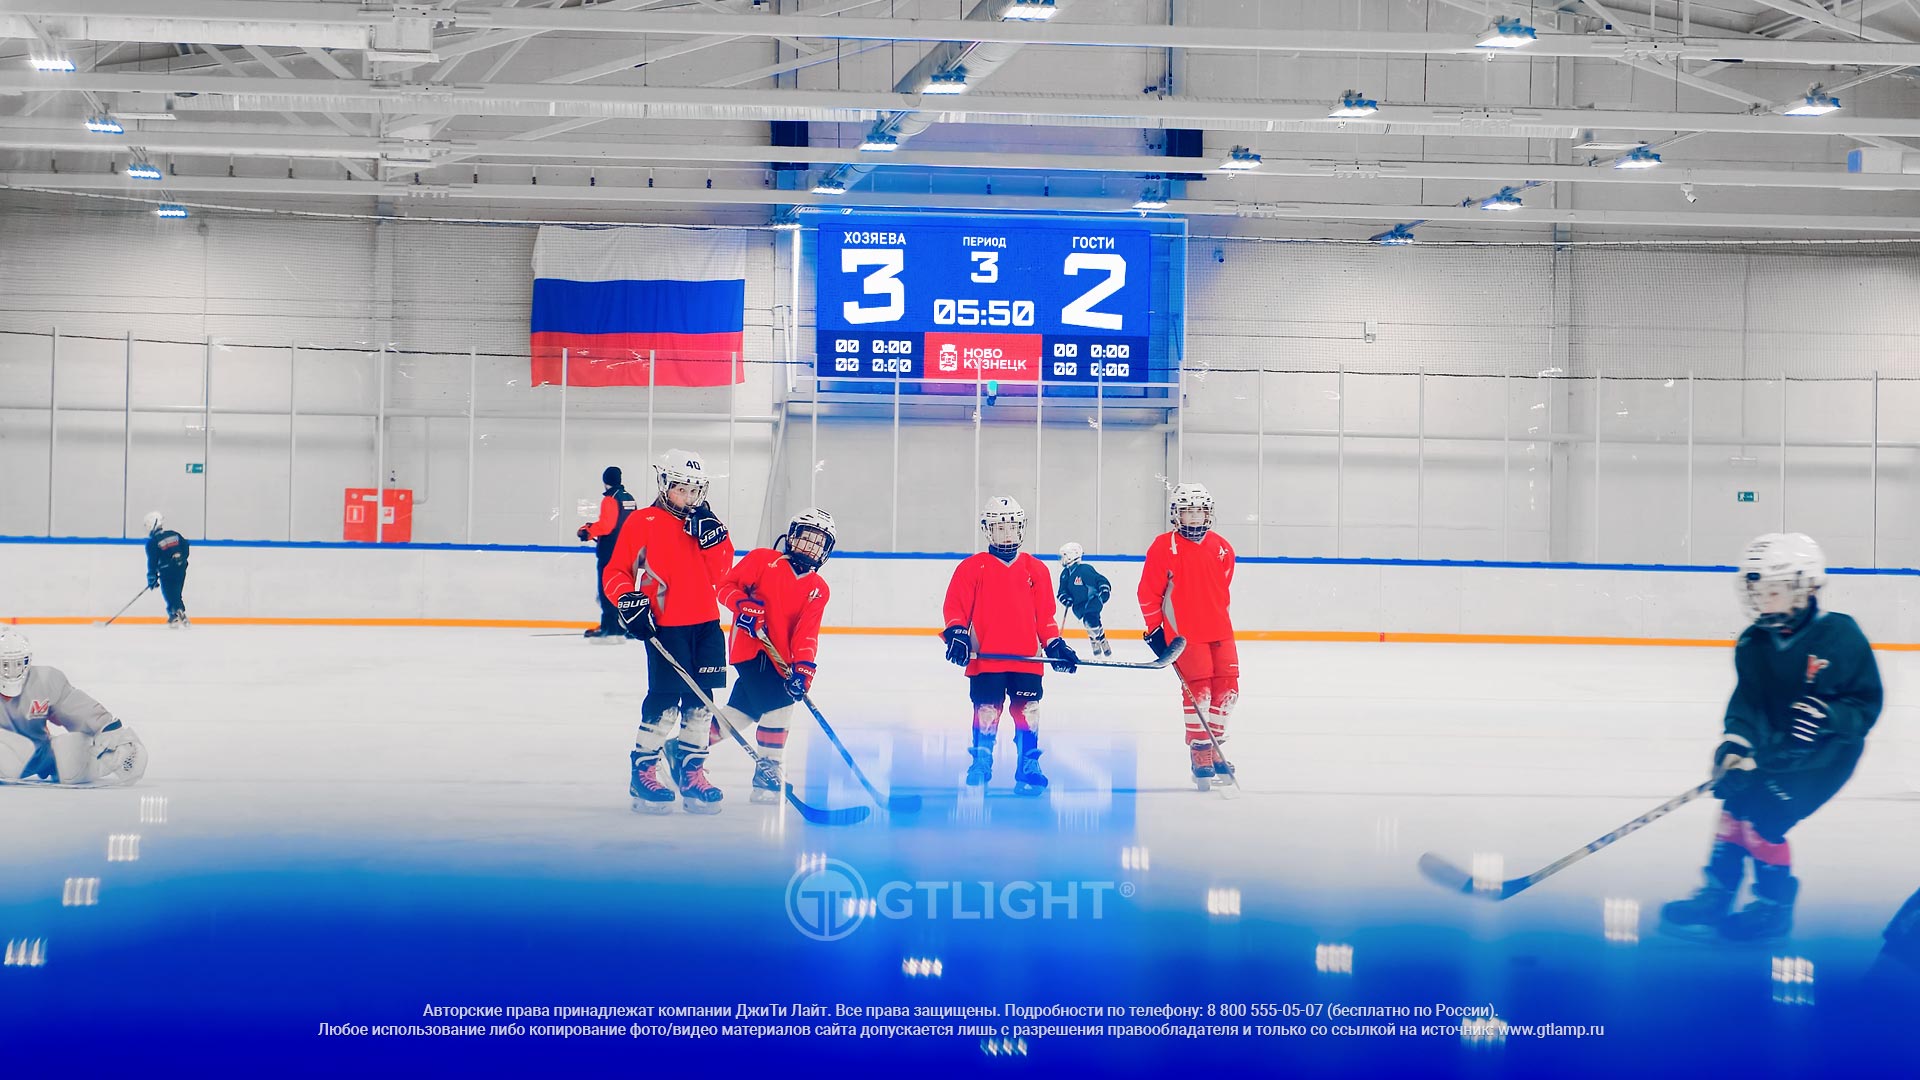 Светодиодное спортивное табло для хоккея, Новокузнецк, ледовая арена «Новоильинская»